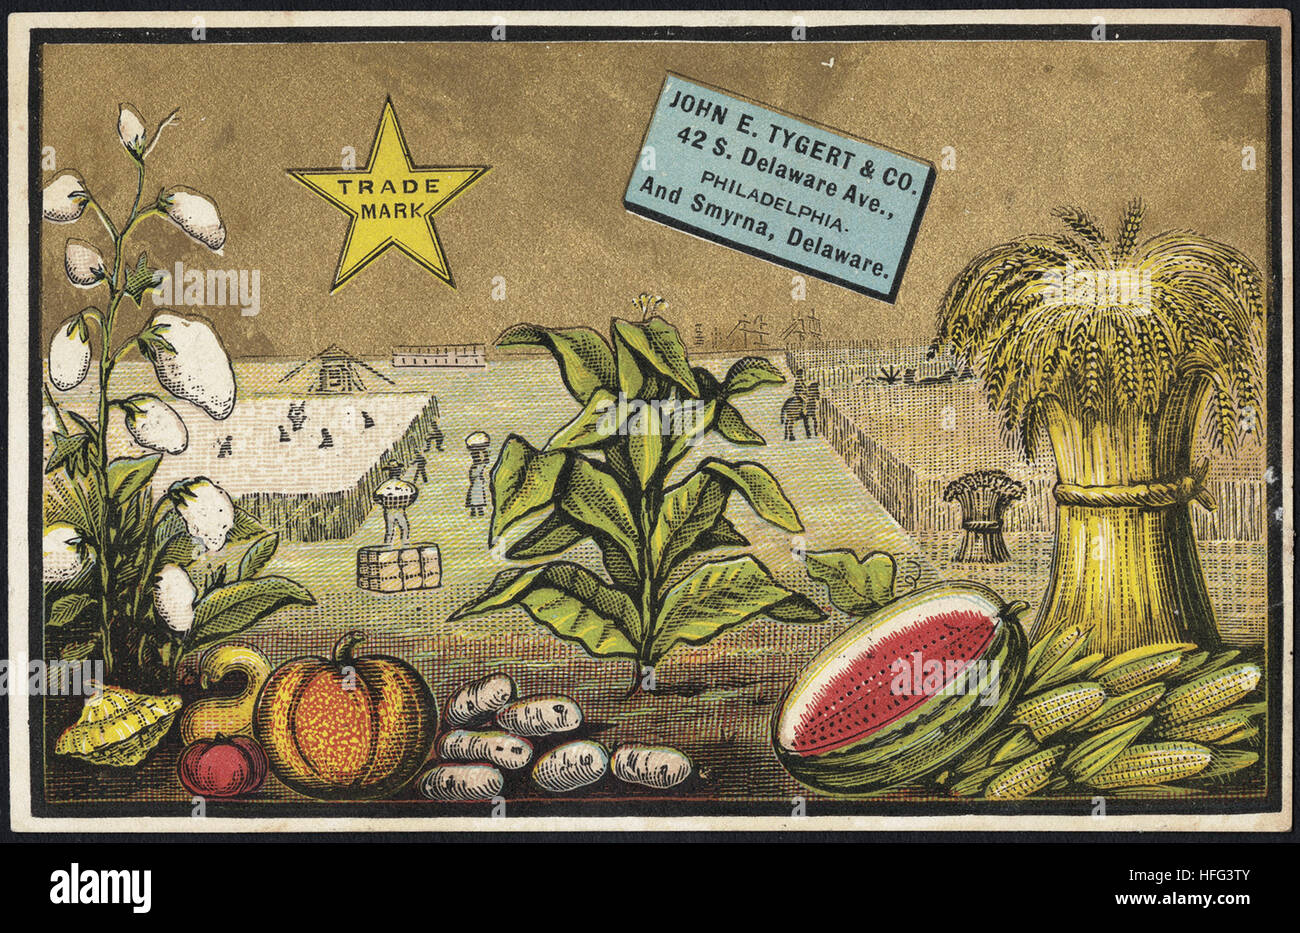 Agricoltura Scambio di carte - John E. Tygert & Co., 42 S. Delaware Ave., Philadelphia. E Smirne, Delaware Foto Stock